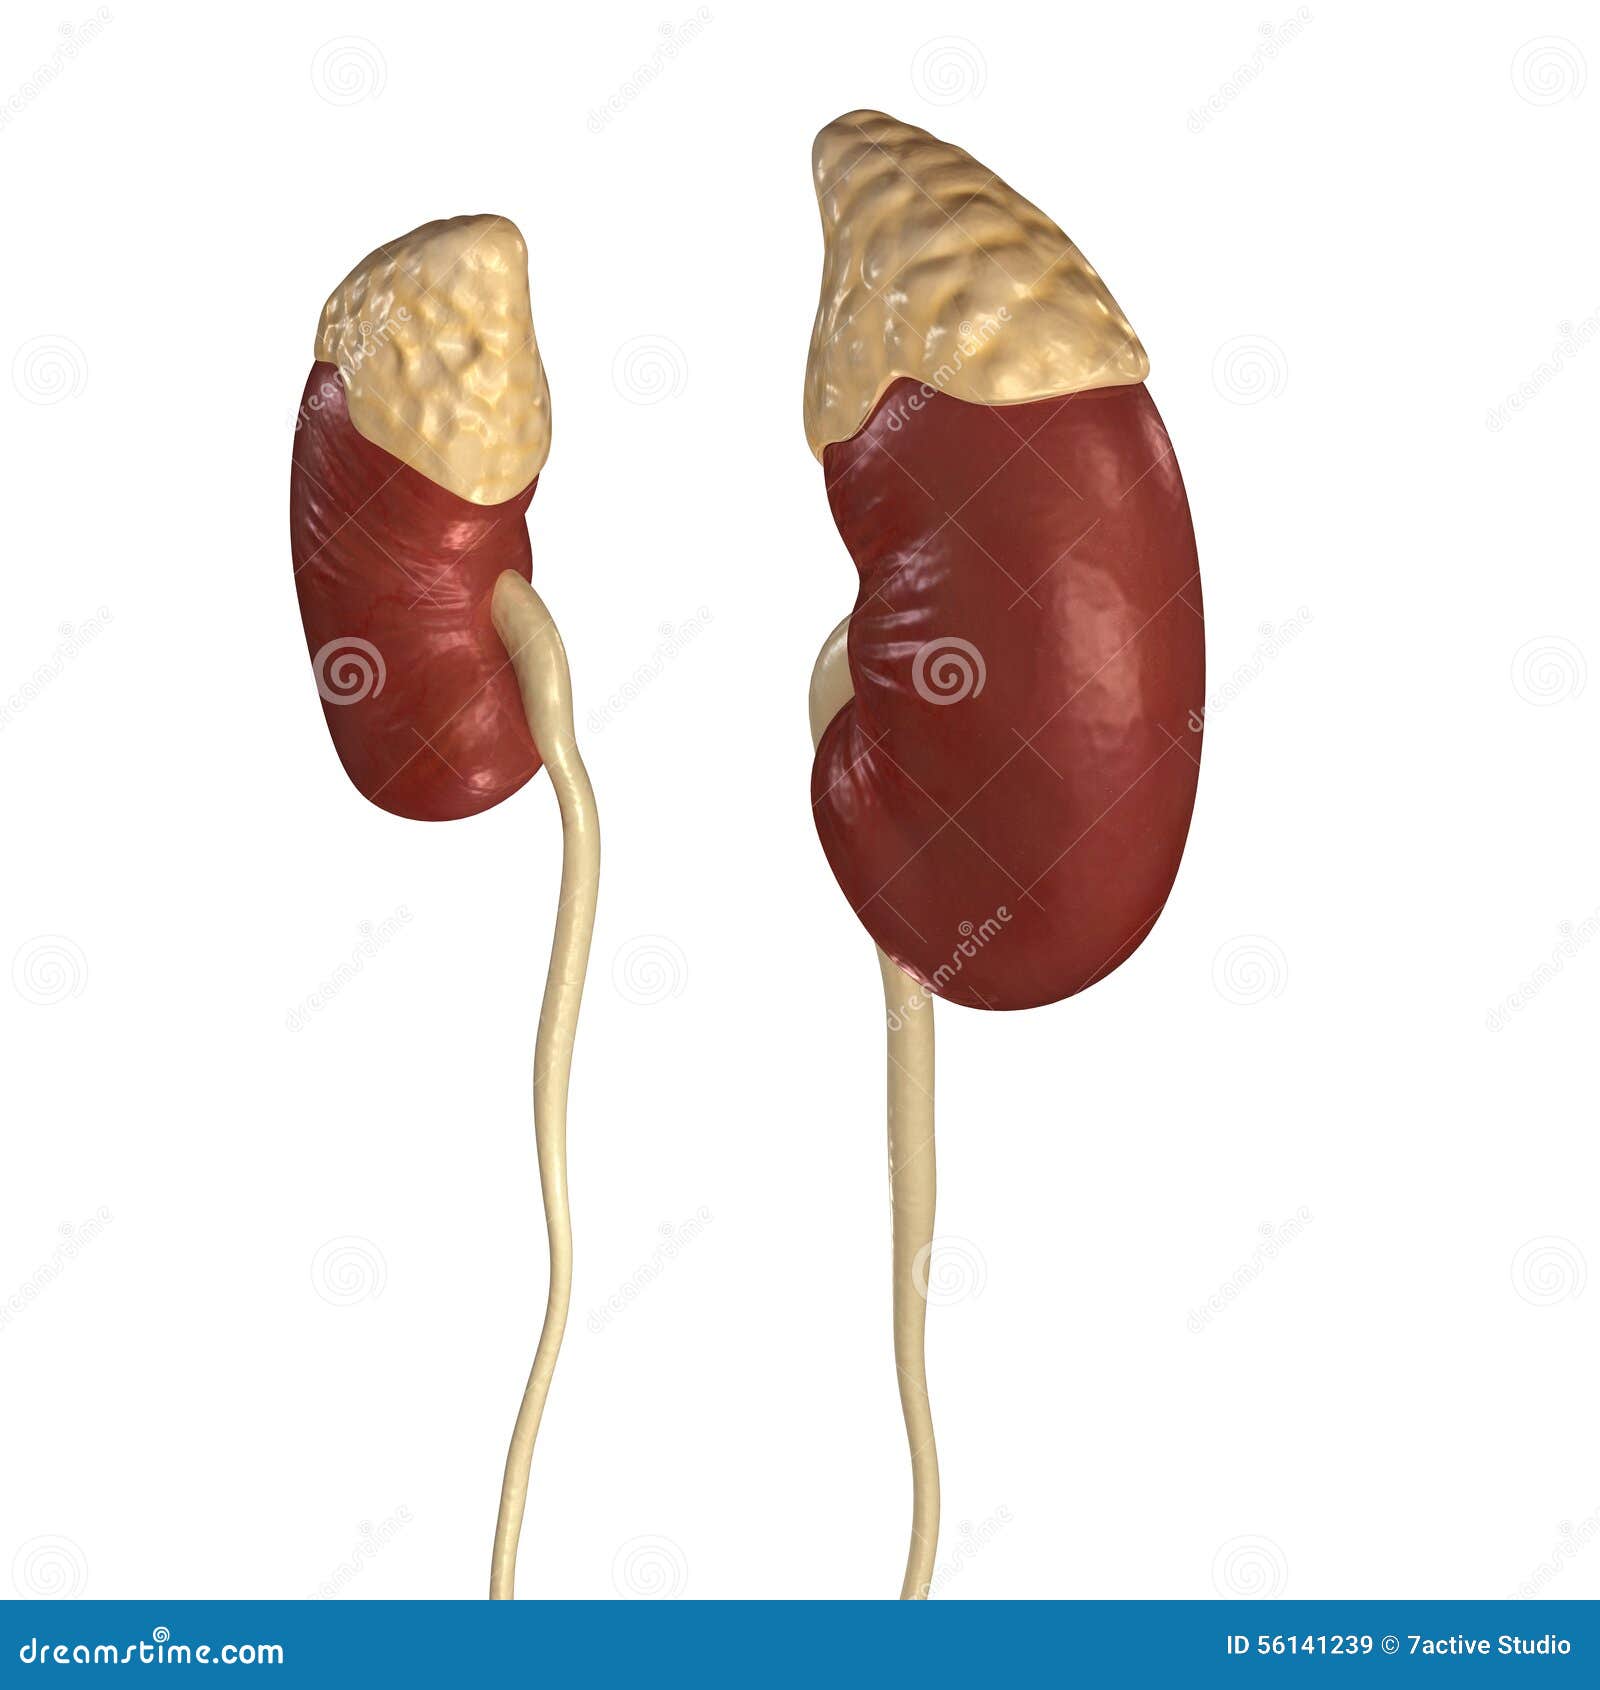 Kidneys stock illustration. Illustration of kidneys, science - 56141239